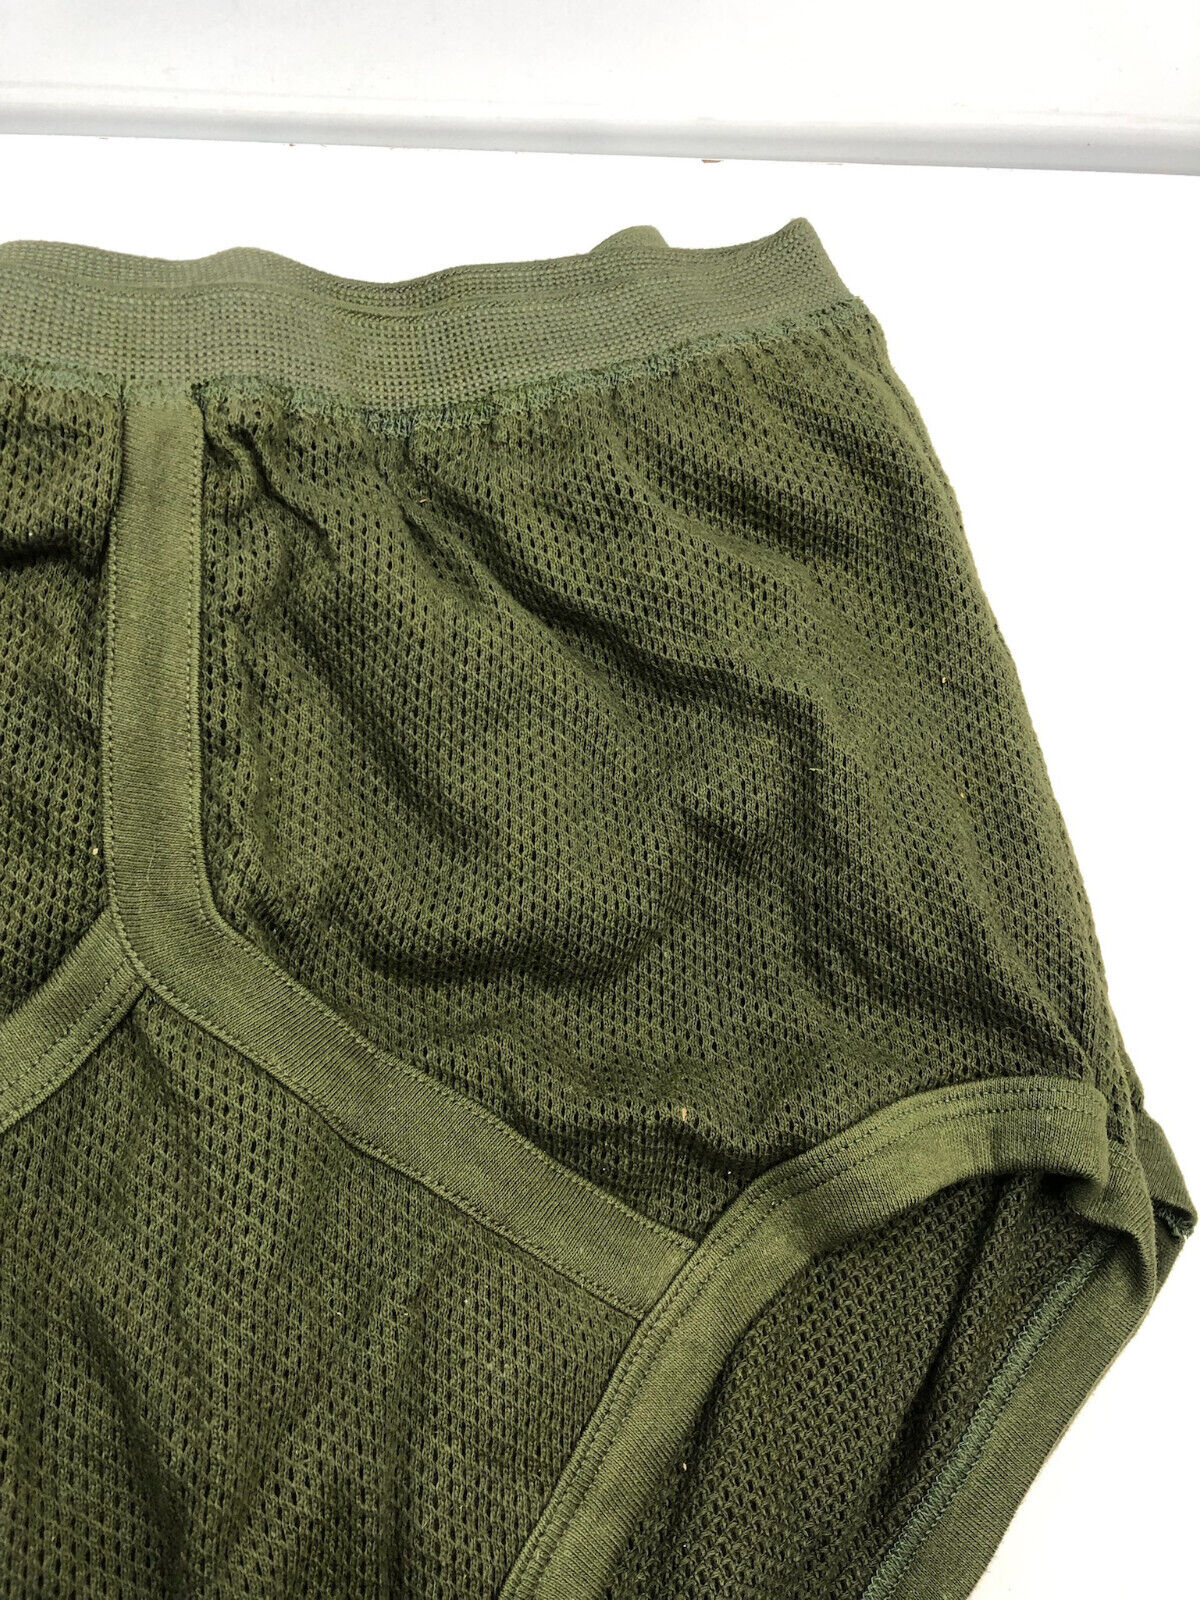 Vintage British Army Man's Underwear Drawers - Medium - Cotton